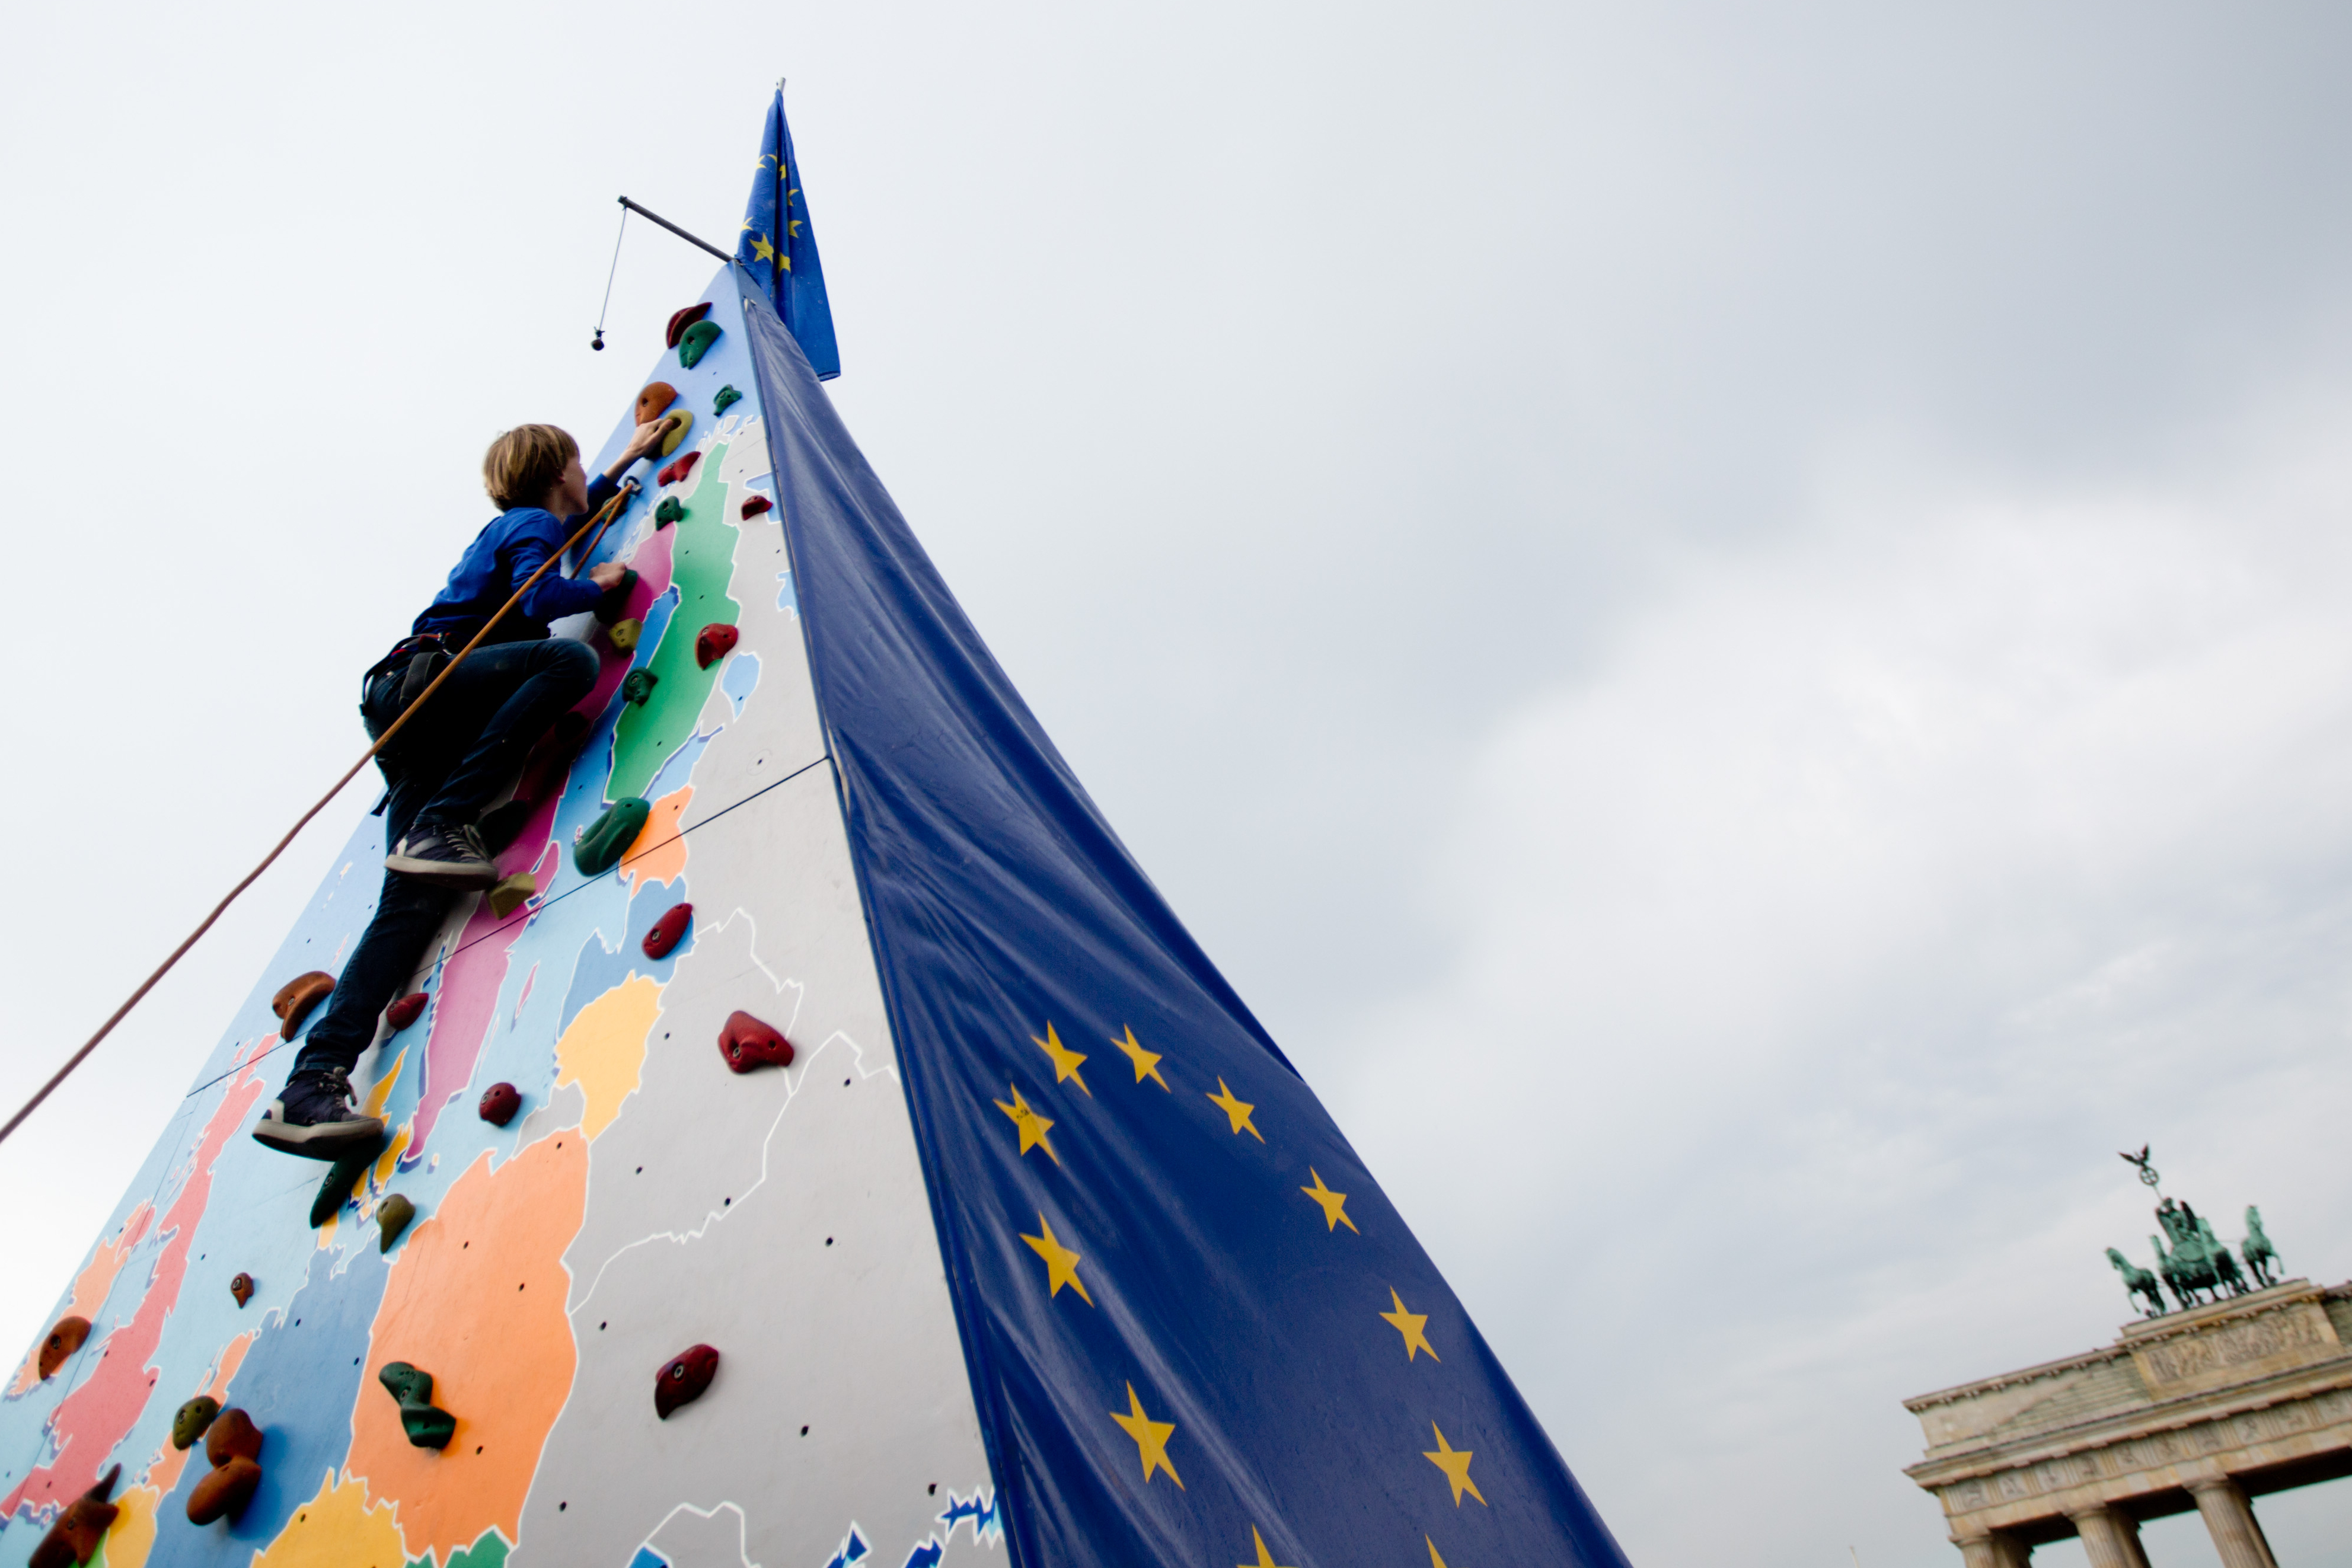 Ein Kind klettert eine Pyramide hoch auf der eine Karte von Europa und die EU-Flagge zu sehen ist. 